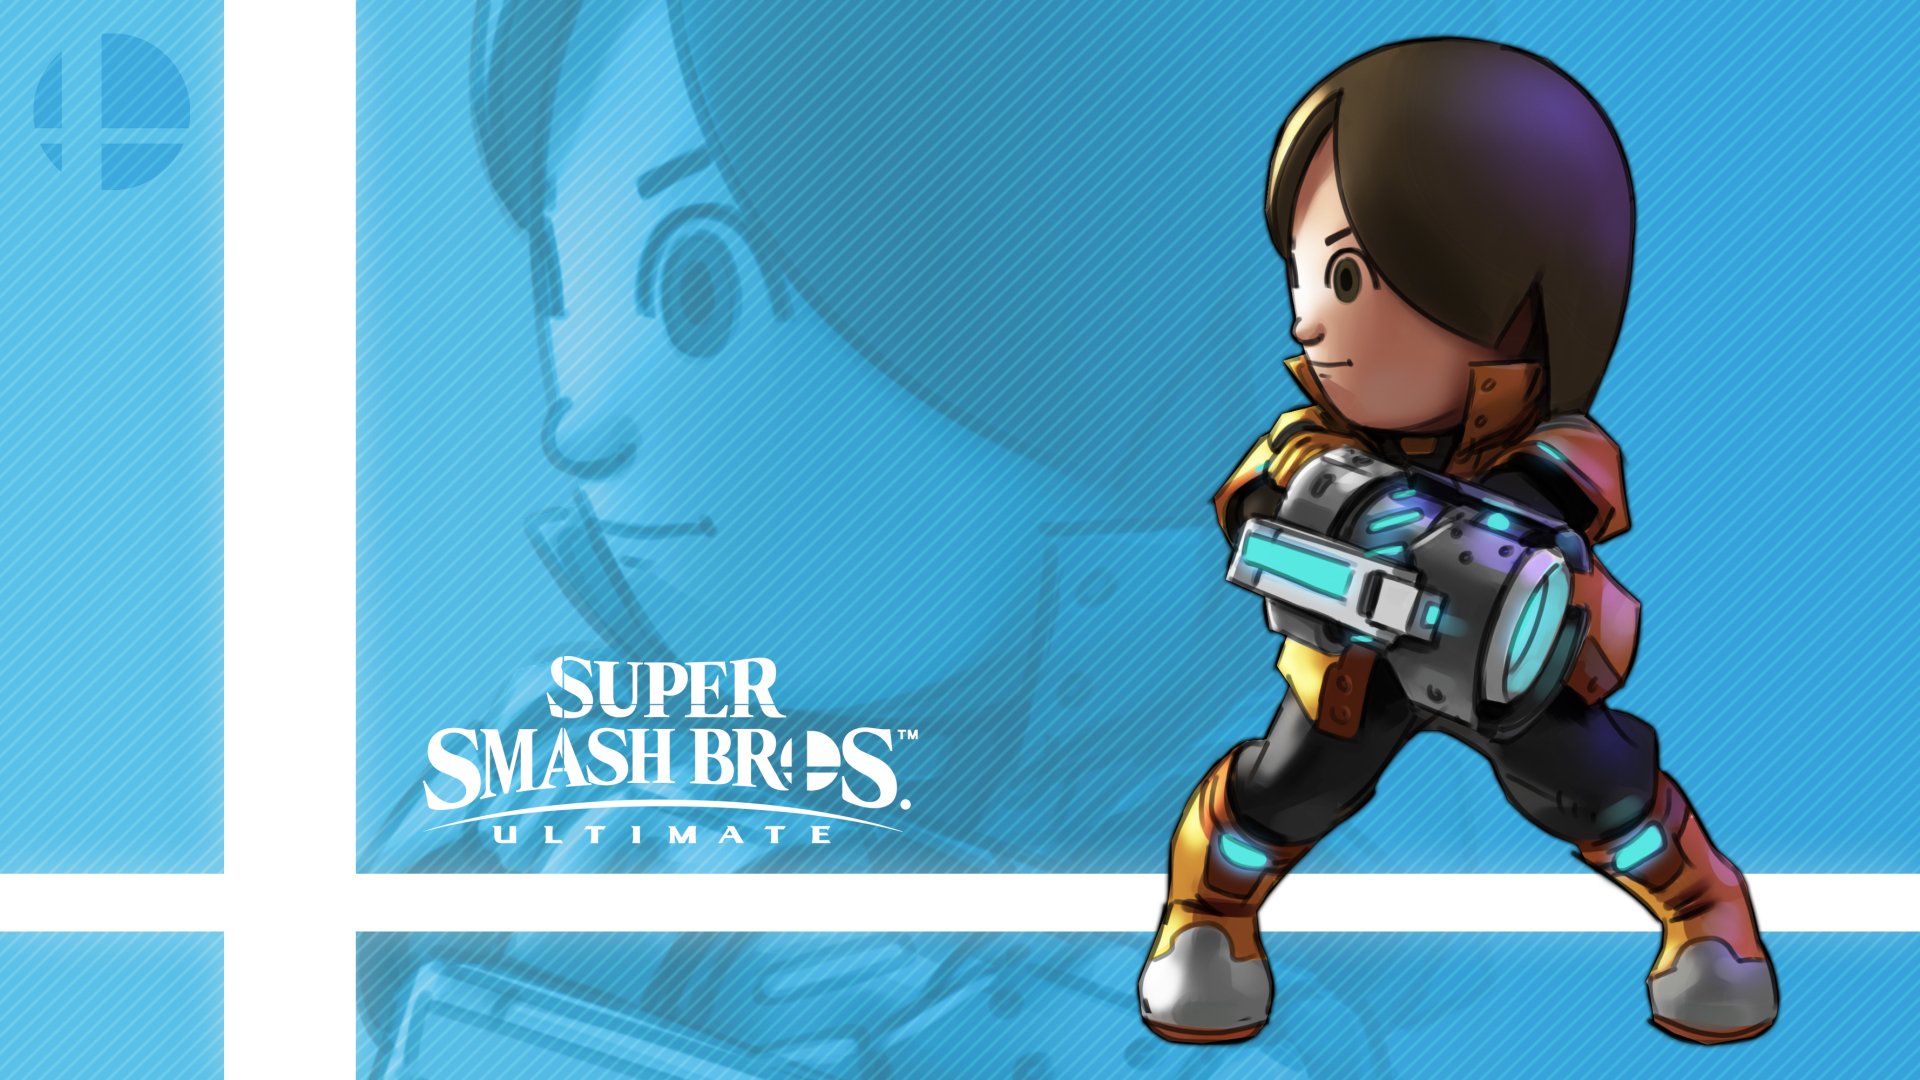 Mii Gunner In Super Smash Bros Ultimate By Callum Nakajima